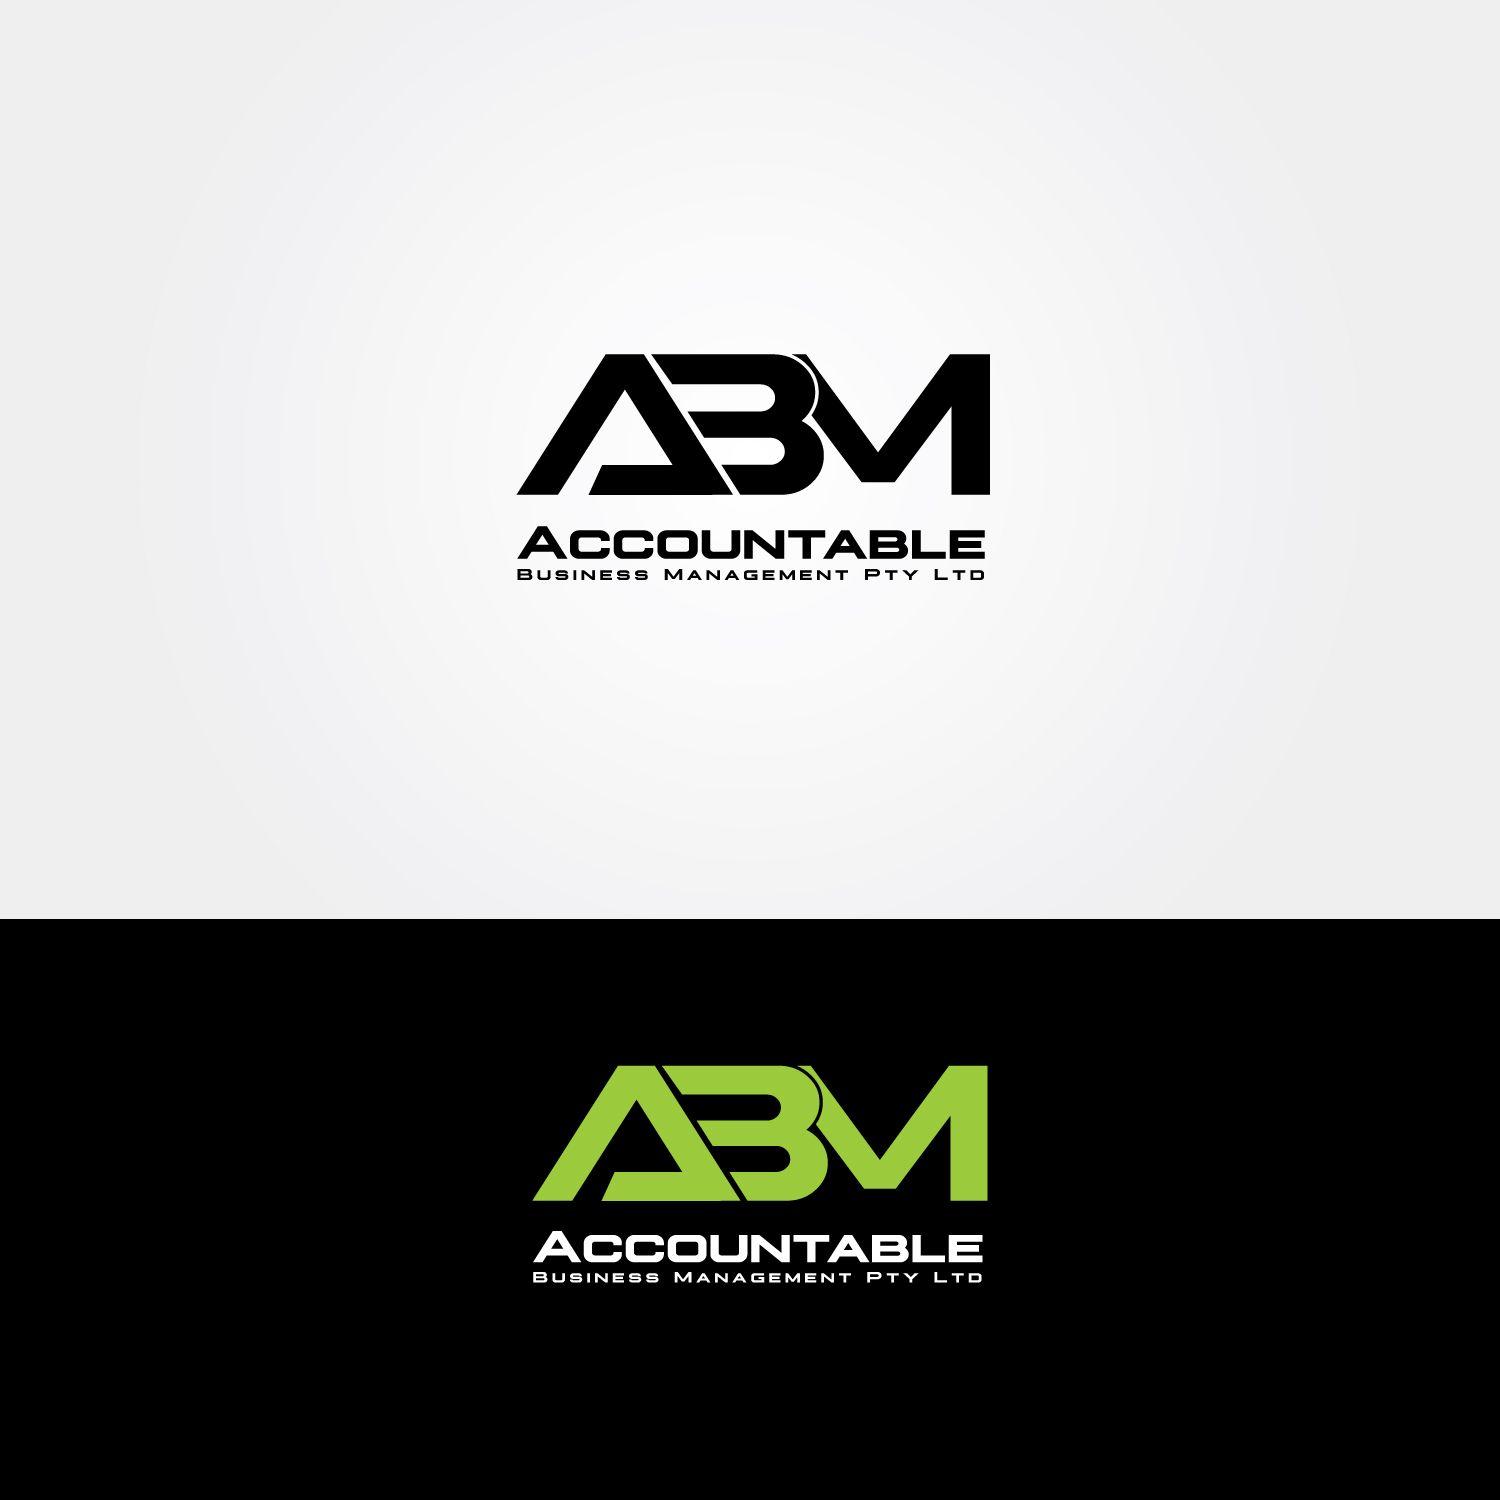 ABM Logo - Elegant, Serious Logo Design for ABM Accountable Business Management